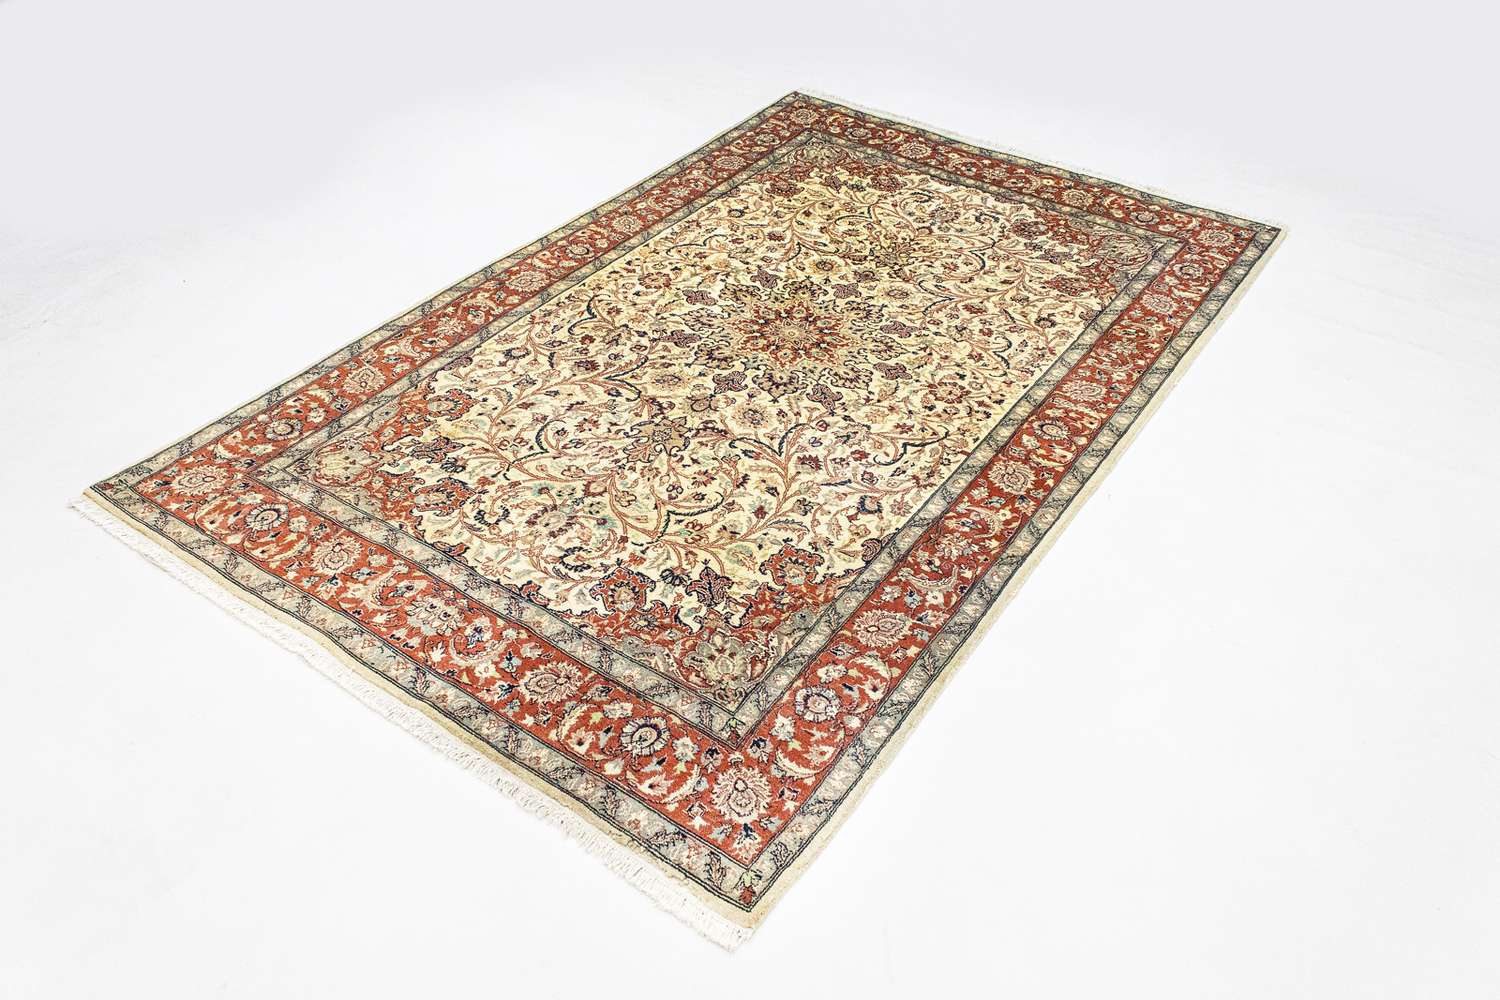 Orientalsk tæppe - 223 x 143 cm - beige